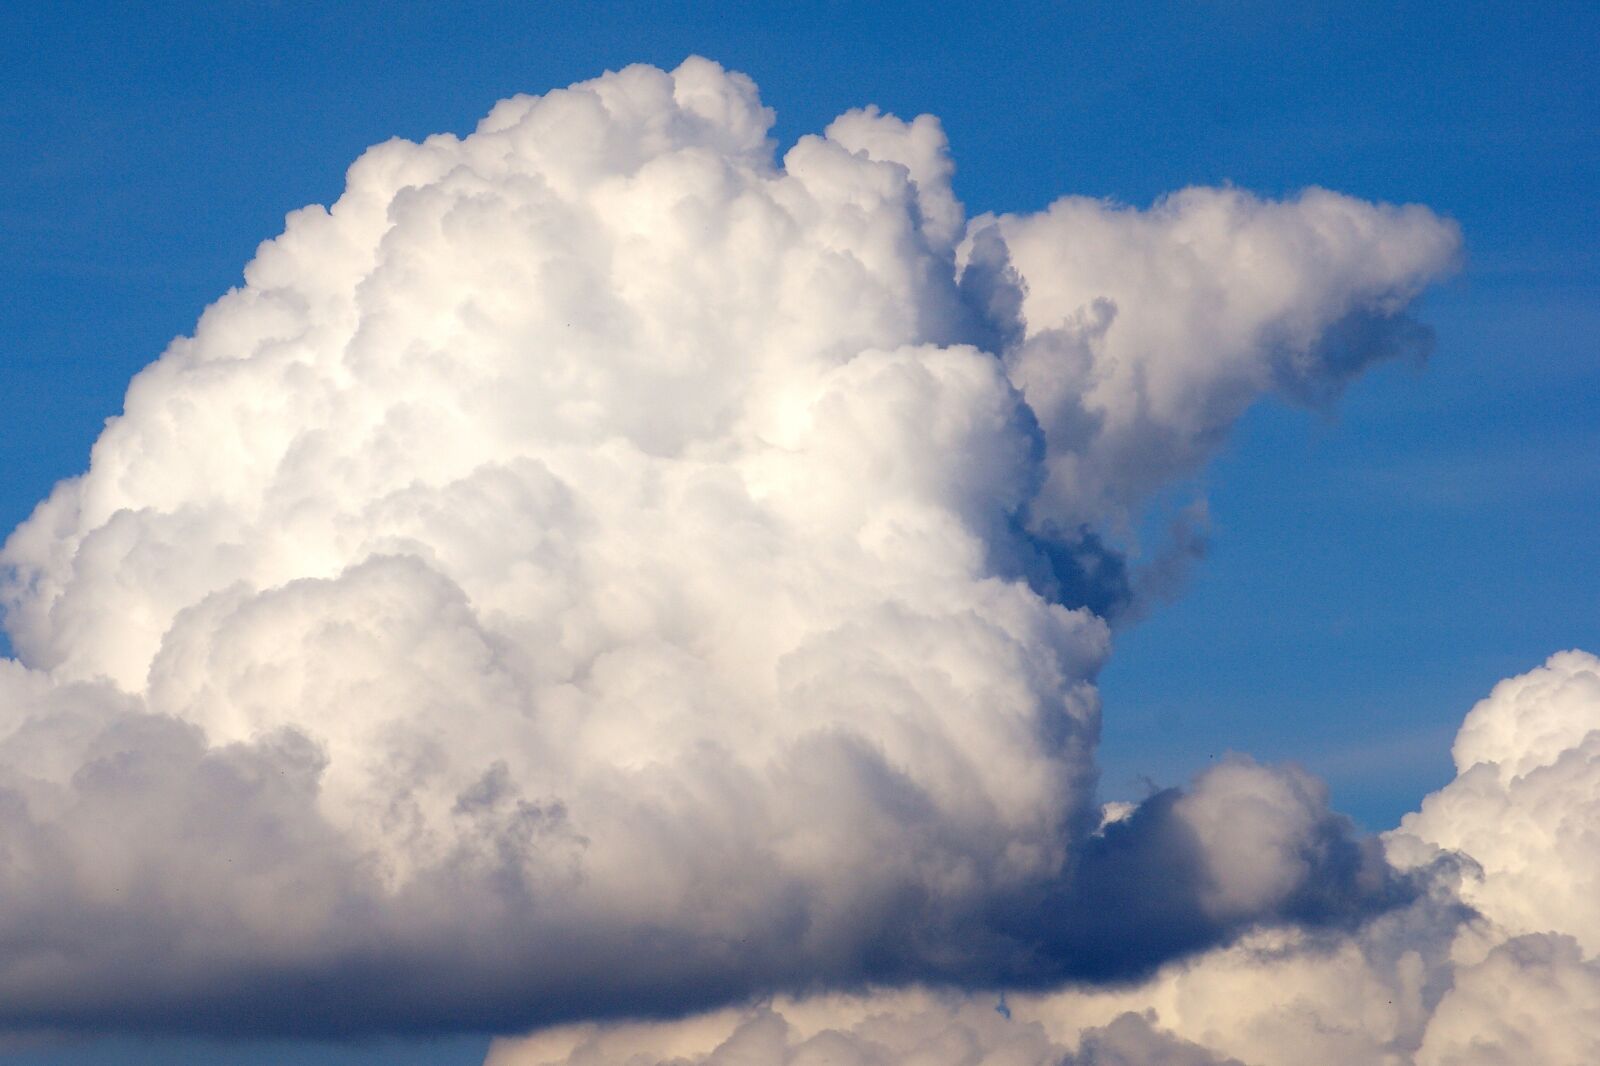 Sony Alpha DSLR-A350 sample photo. Cloud, sky, blue photography